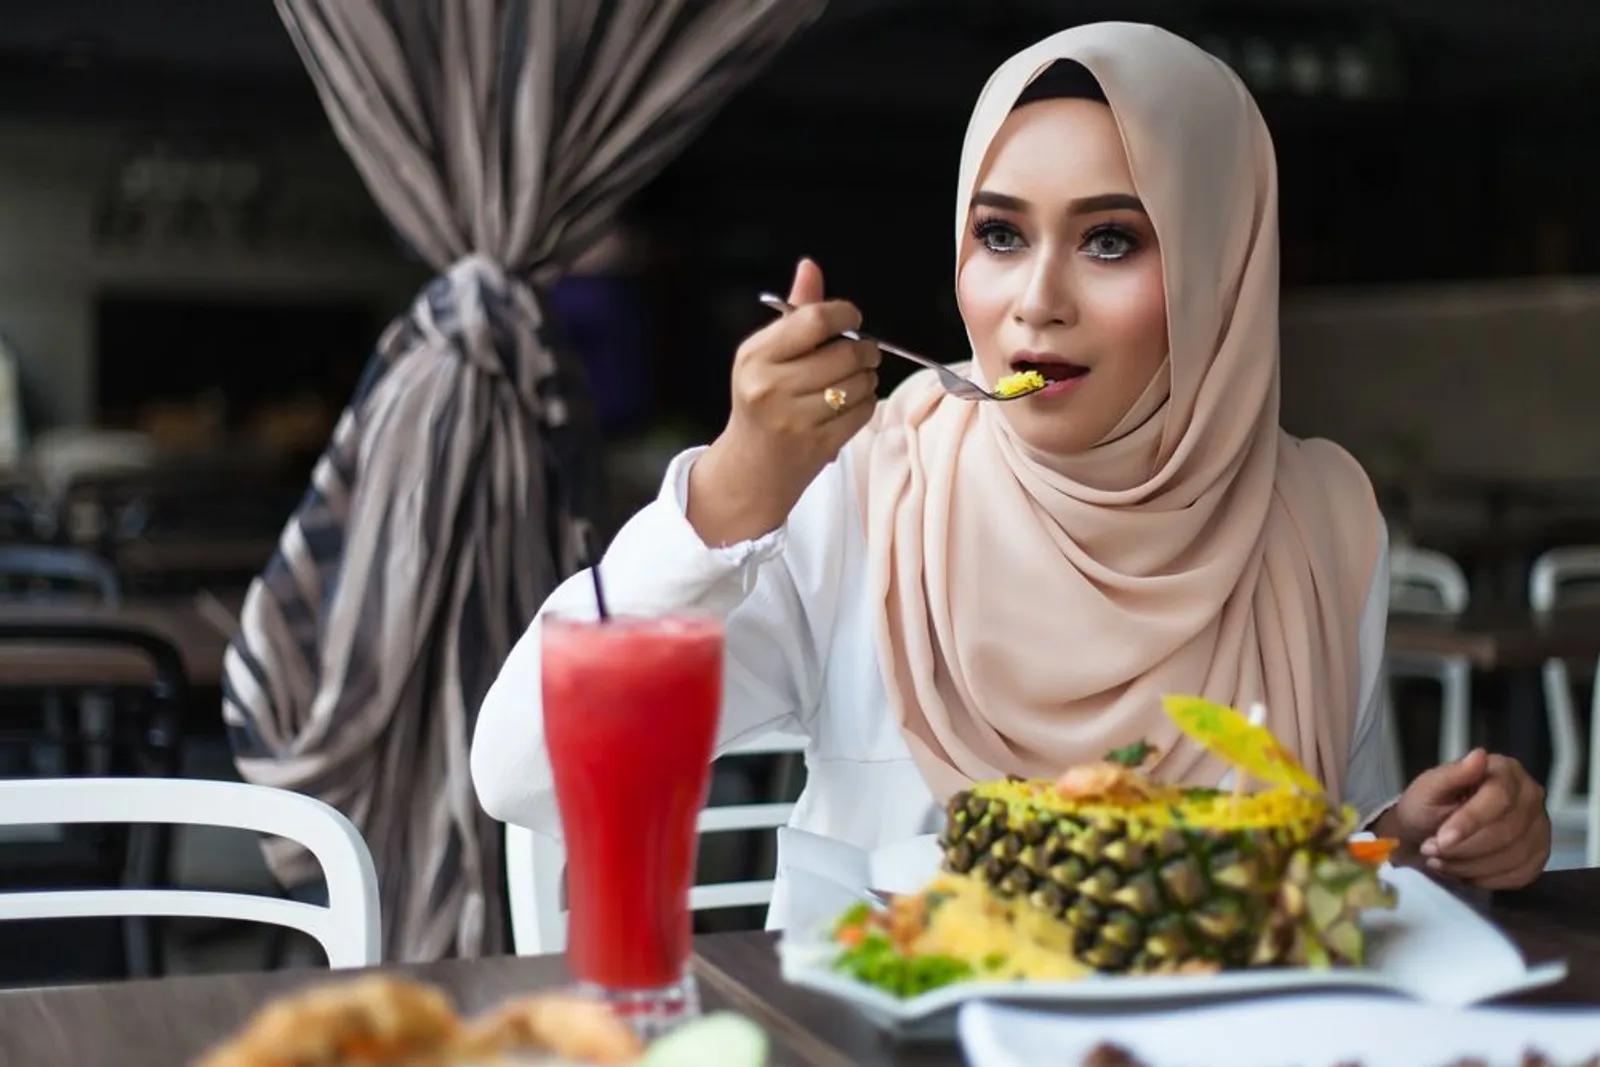 Jangan Karena Tertutup Hijab, Kamu Jadi Abaikan 5 Masalah Ini